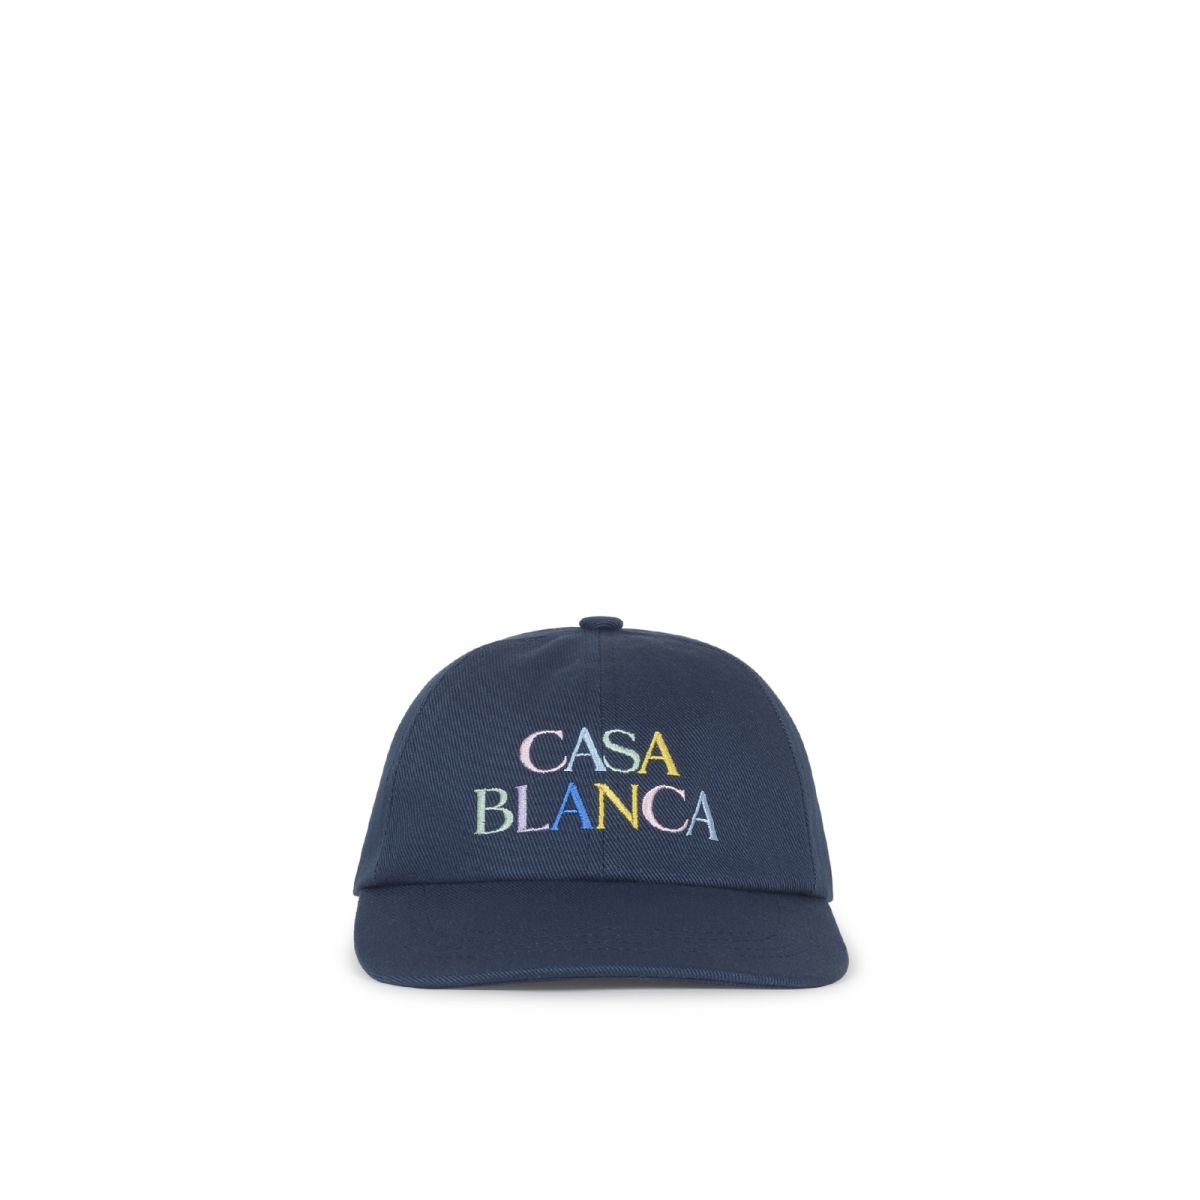 CASABLANCA - Gorra con logo bordado